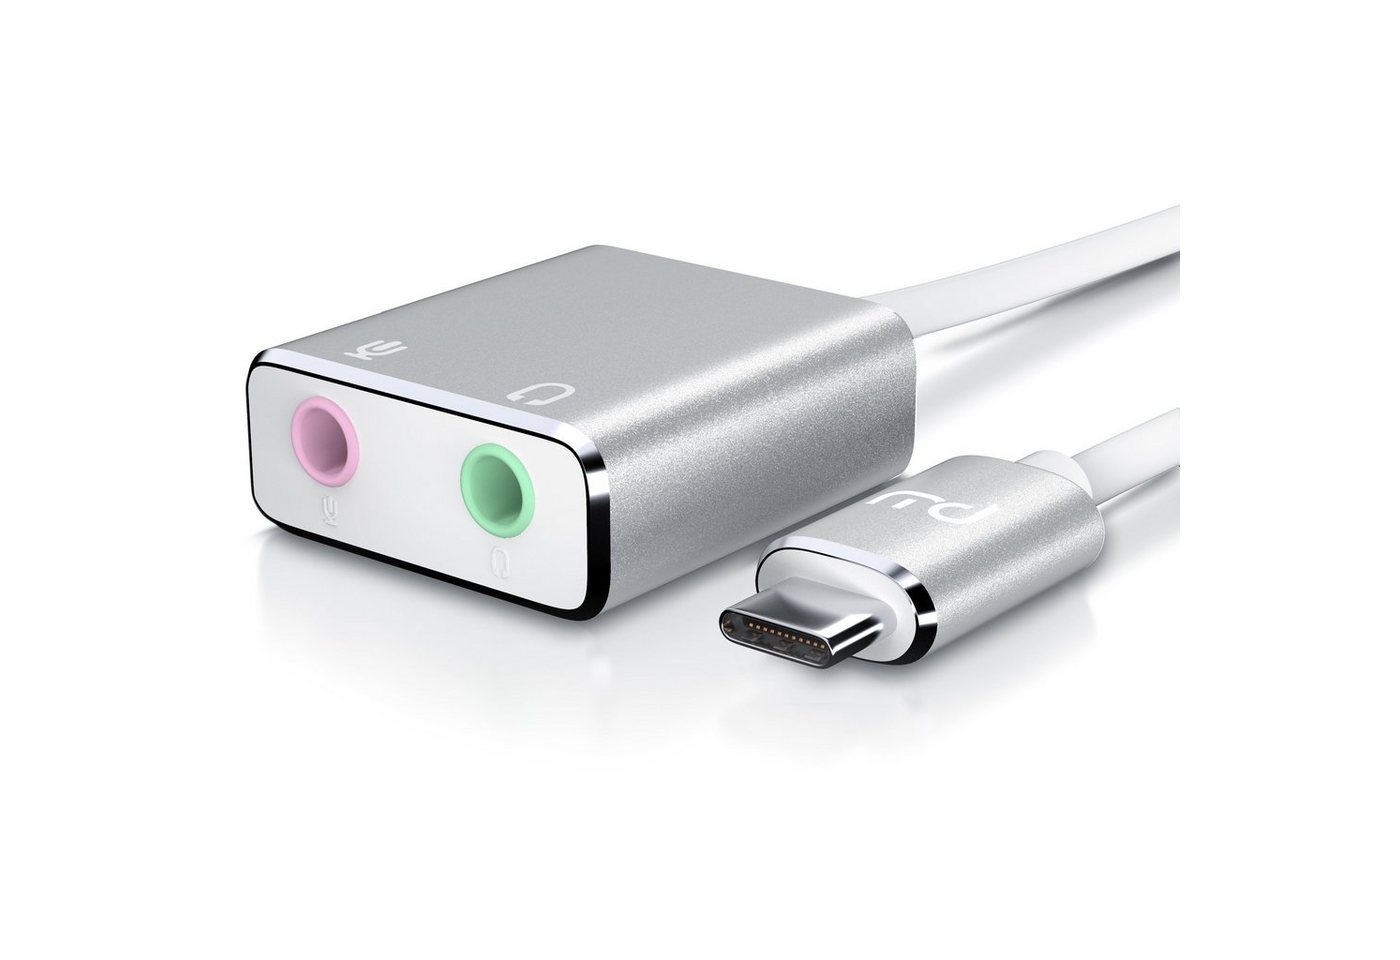 Primewire USB-Soundkarte Virtual 7.1 Surround, extern, Stereo Audio Adapter, Windows 10 & Mac OS X kompatibel von Primewire